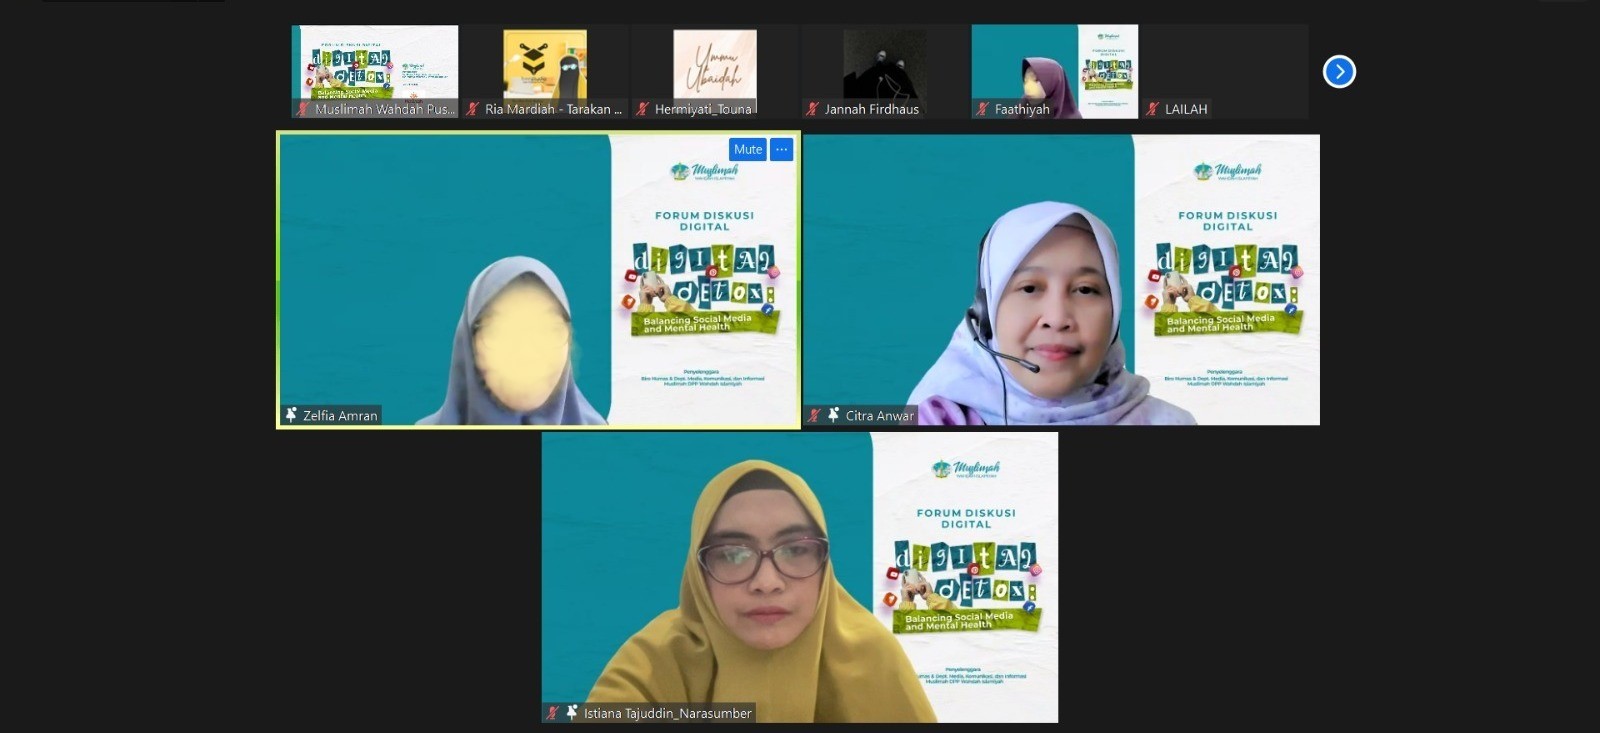 Webinar Digital Detox Muslimah Wahdah, Ajak Seimbangkan Media Sosial dan Kesehatan Mental